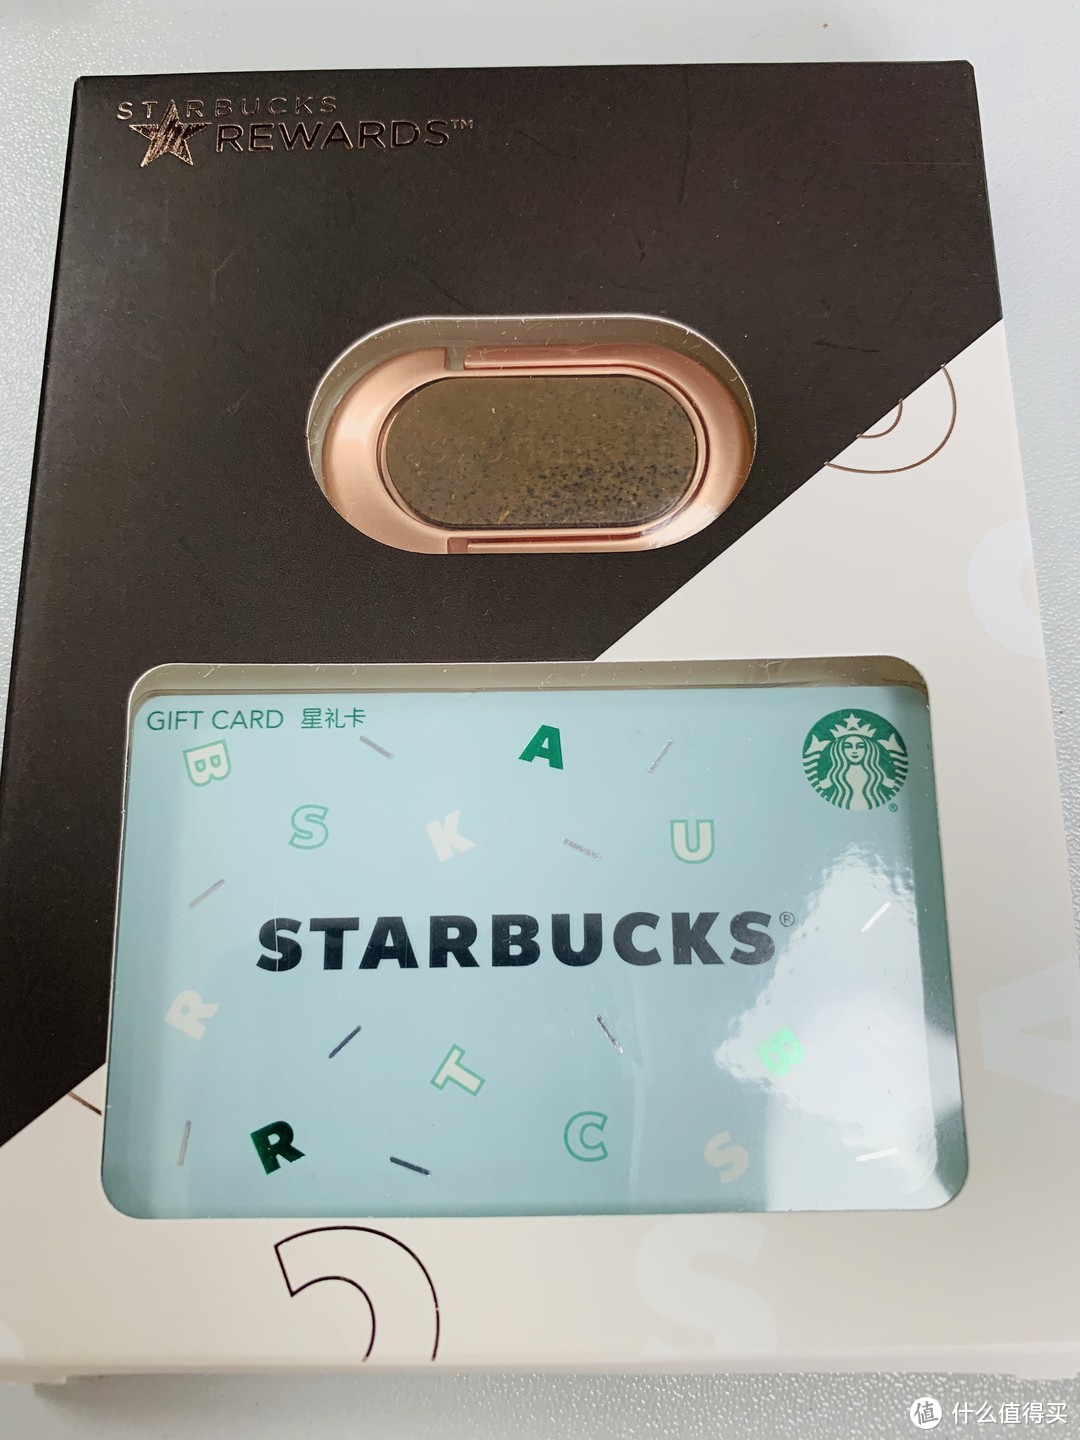 咖啡渣材质手机支架是啥样？——星巴克纸质卡和咖啡渣材质手机支架晒单